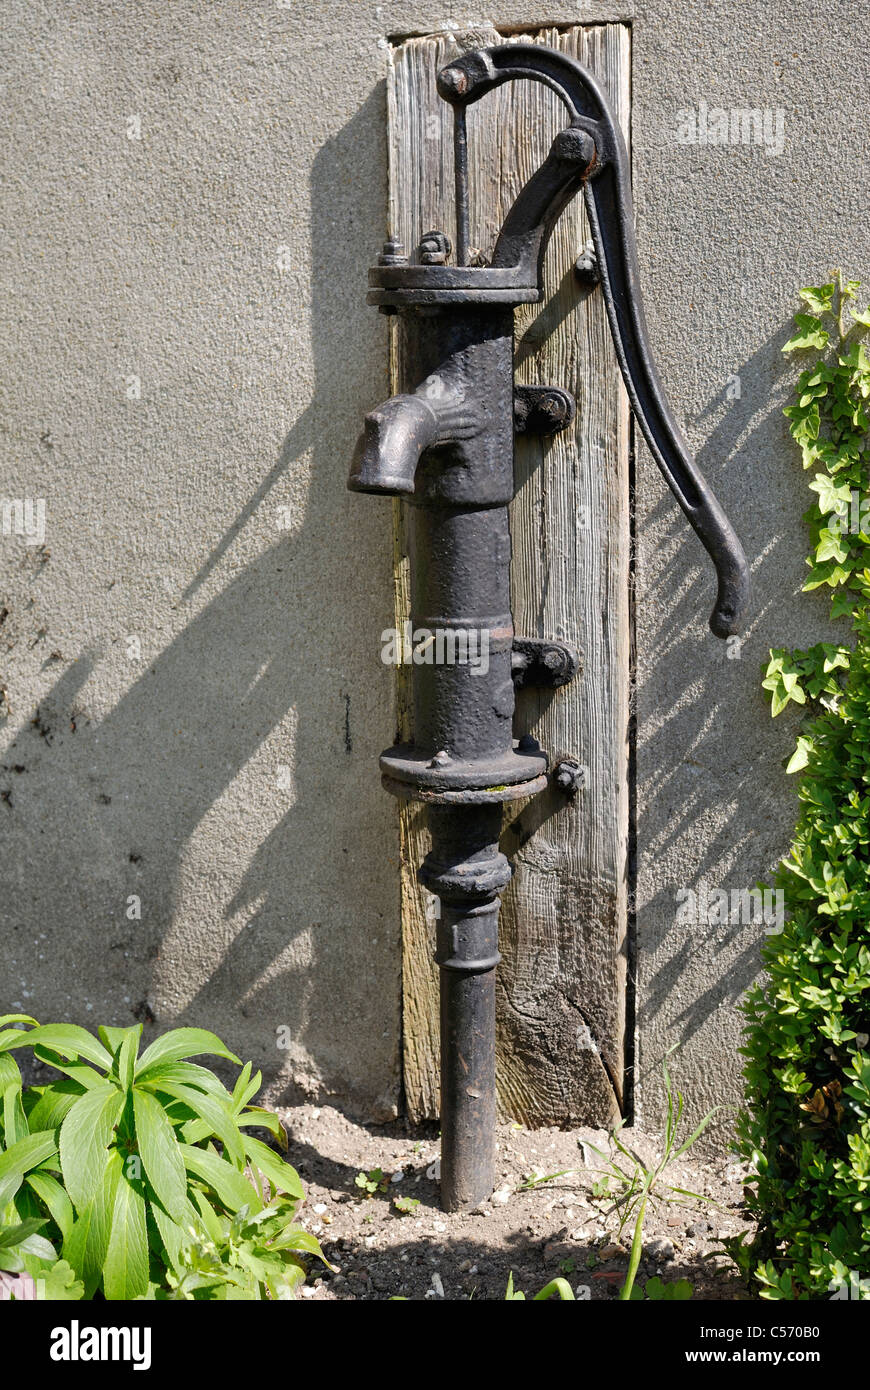 Alte Handwasserpumpe im Garten. Gusseisenwasserpumpe im Vintage-Stil  Stockfotografie - Alamy